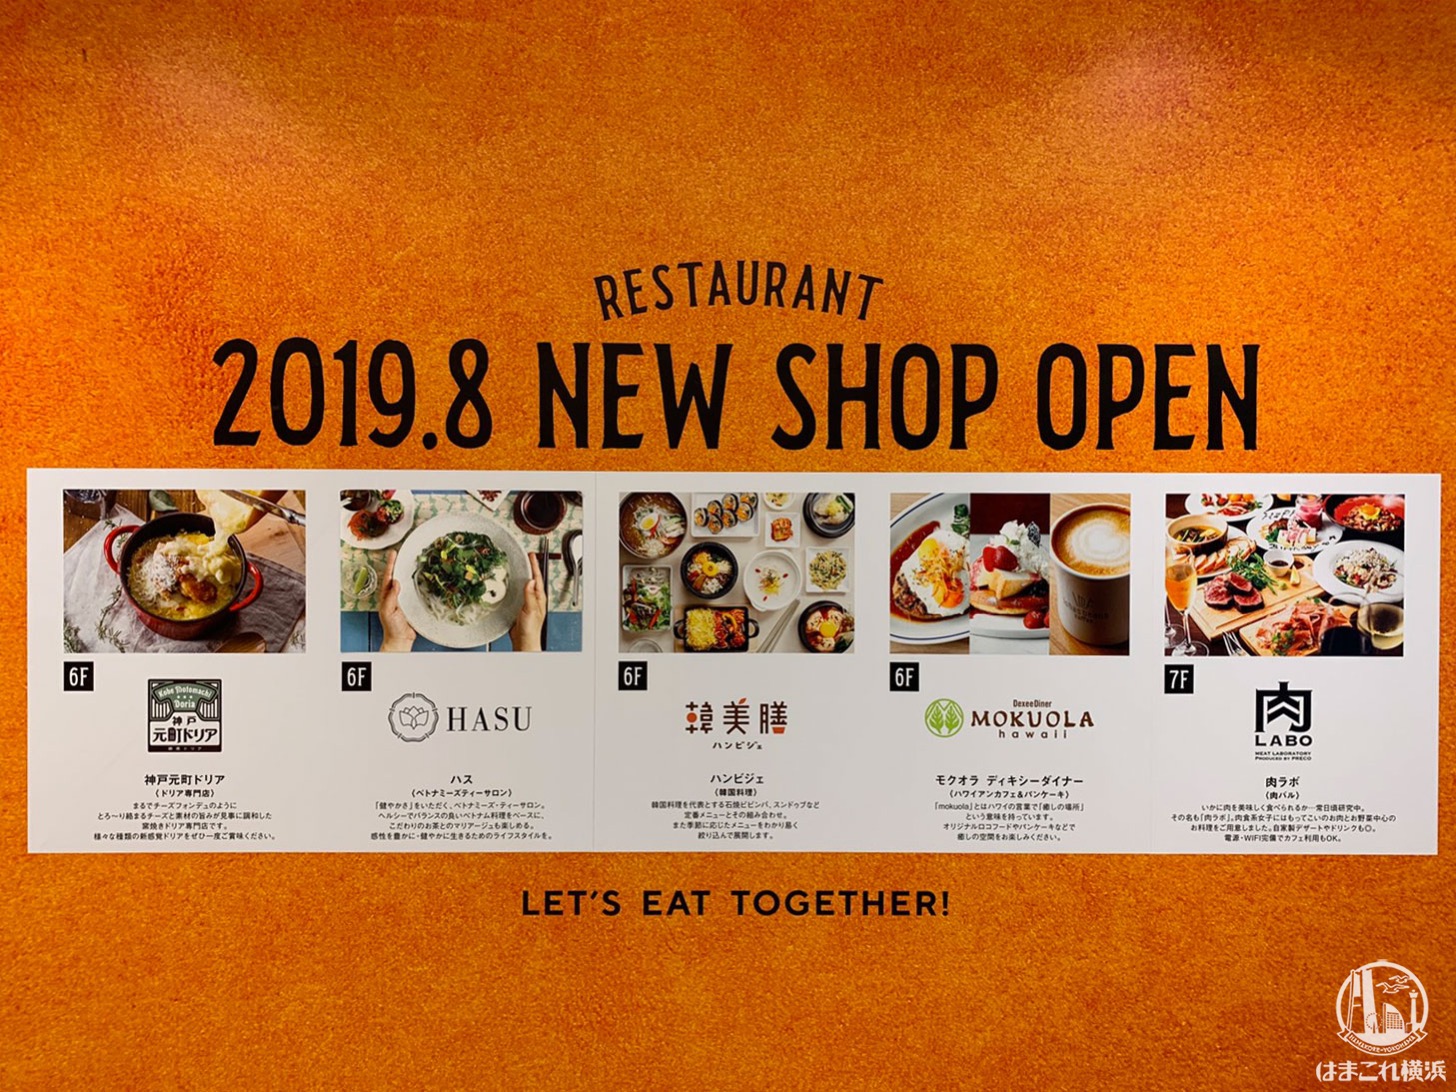 ルミネ横浜に韓美膳 ハス 肉ラボなど新レストランが8月にオープン はまこれ横浜